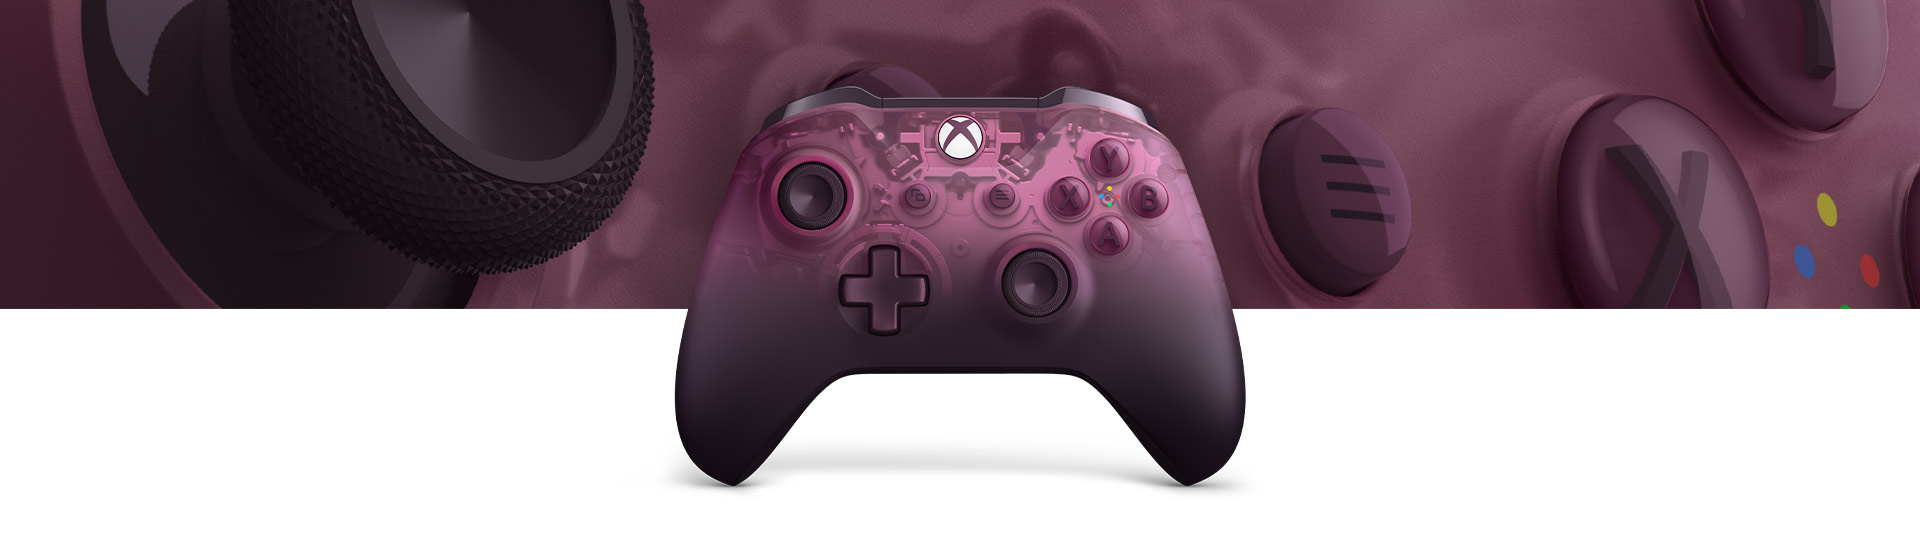 Вид спереди на беспроводной геймпад Xbox особой серии Phantom Magenta, крупный план текстуры поверхности геймпада